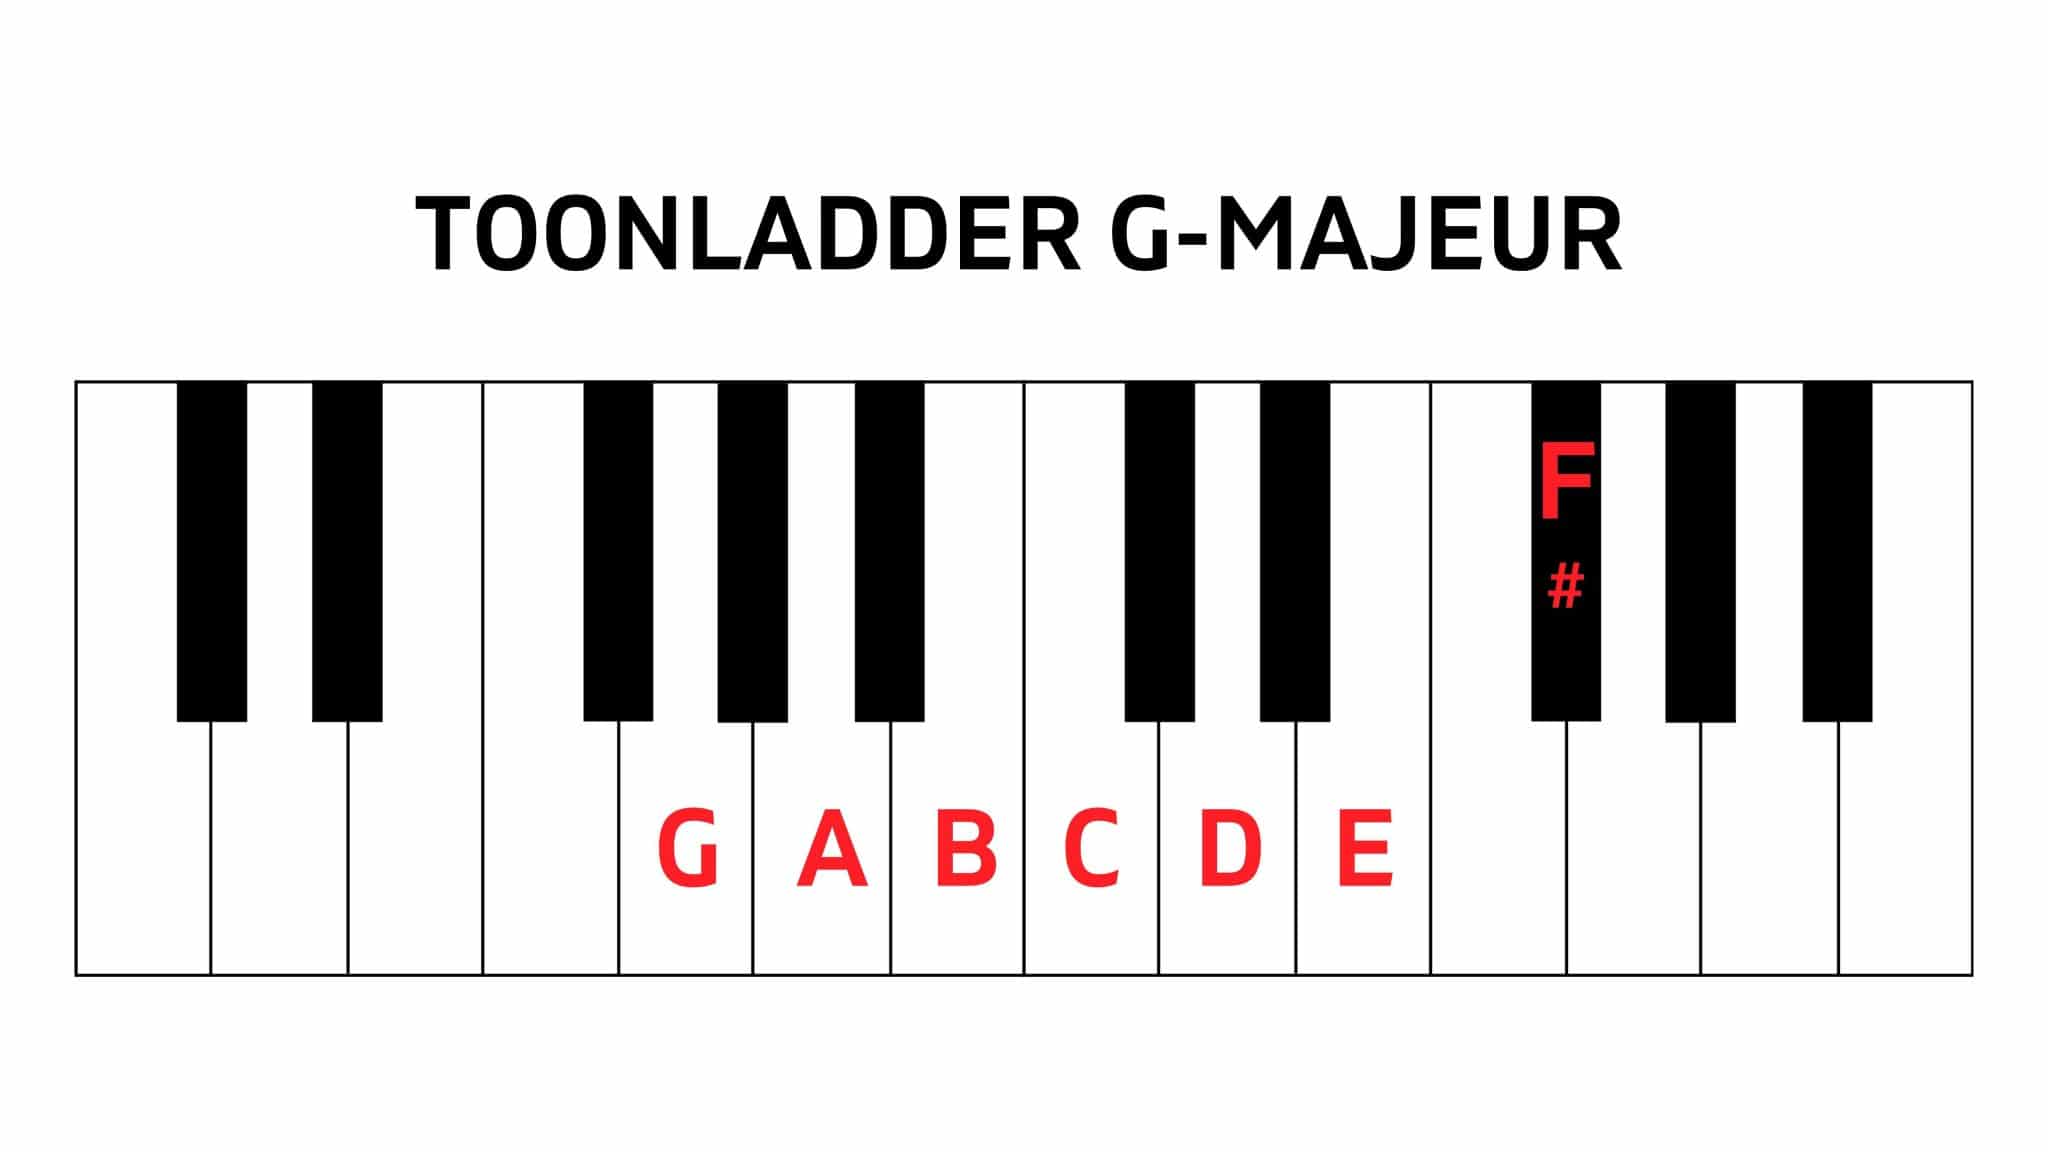 Toonladder G